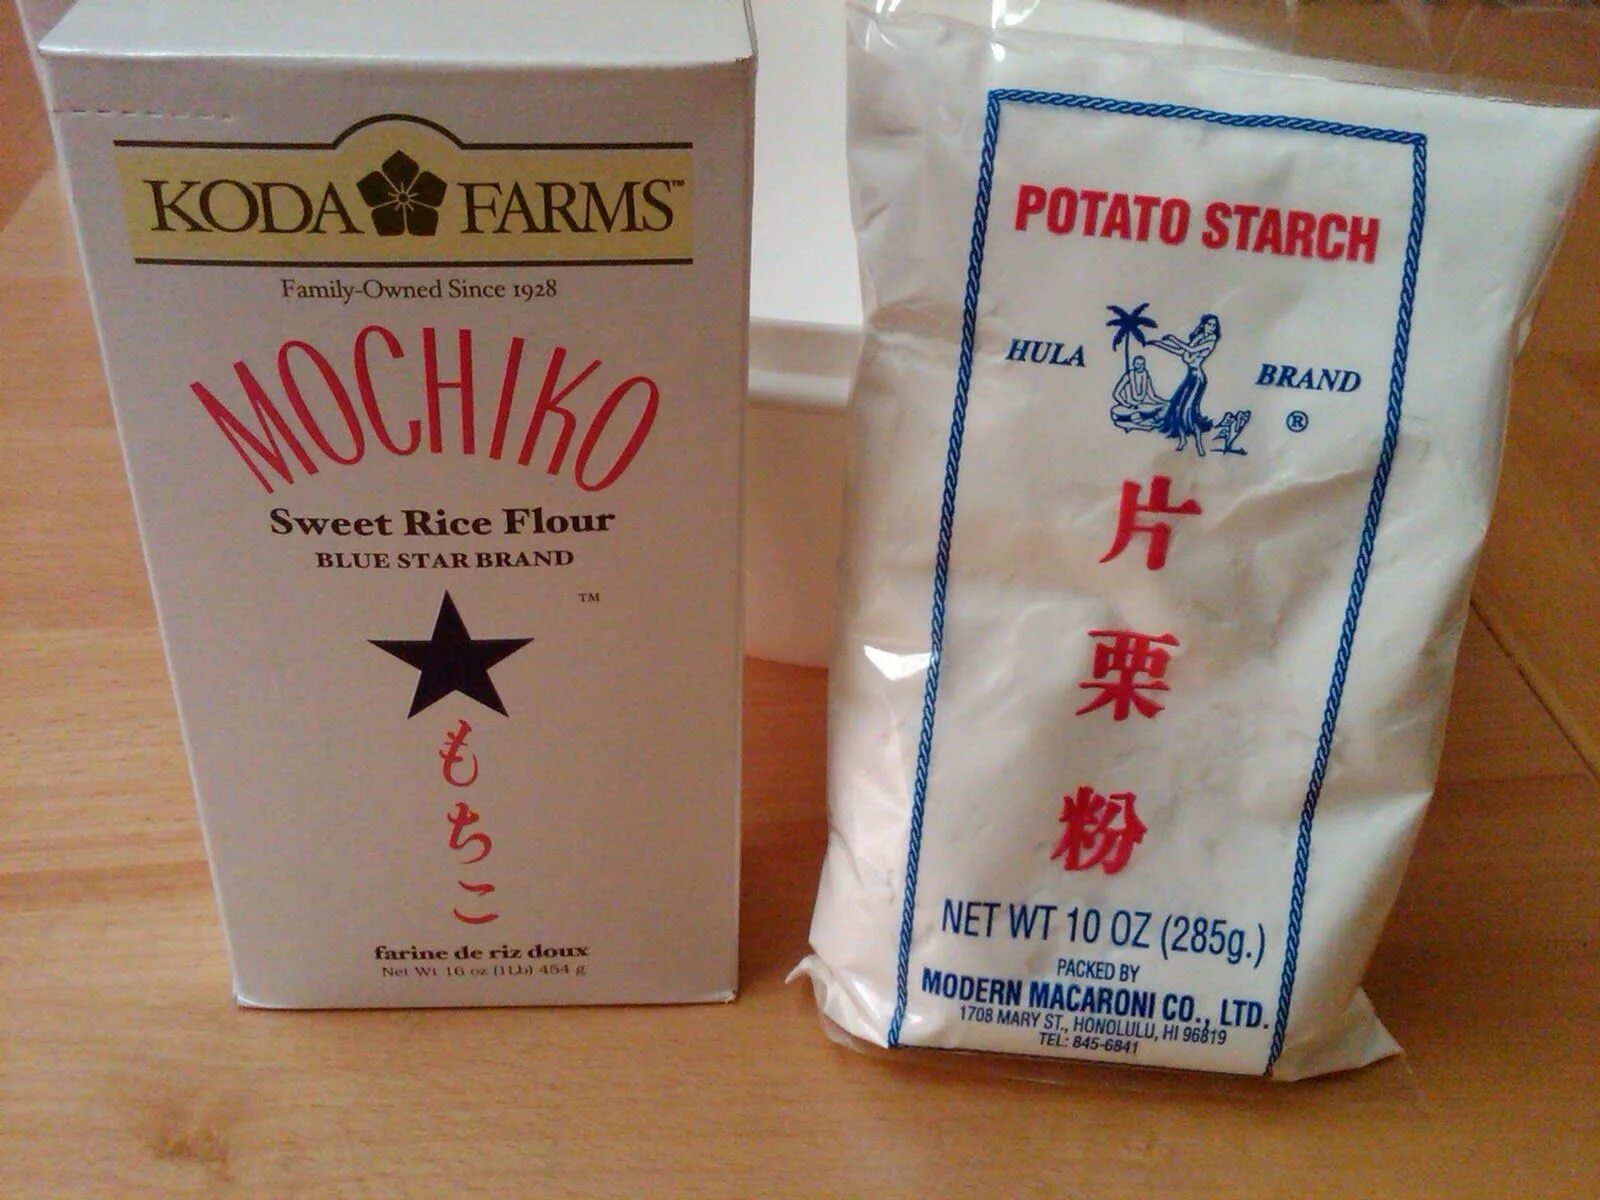 Где купить рисовую муку. Клейкая рисовая мука для Моти. Мука Mochiko. Японская рисовая мука клейкая. Мука из клейкого риса.